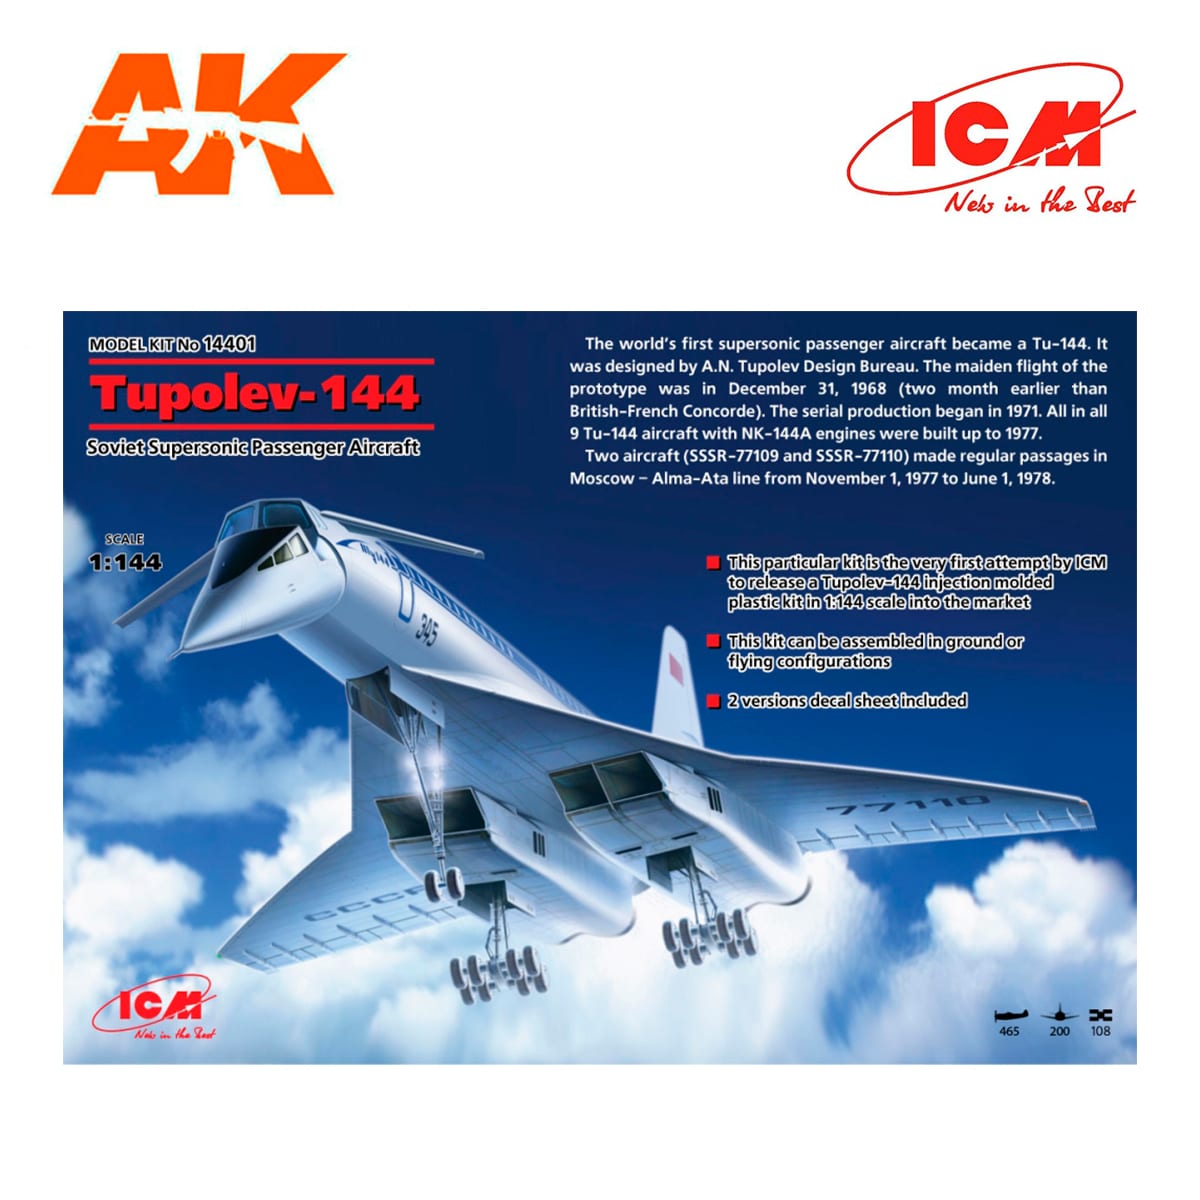 ICM 14401 Soviet Supersonic Passenger Aircraft Tupolev-144 1/144 